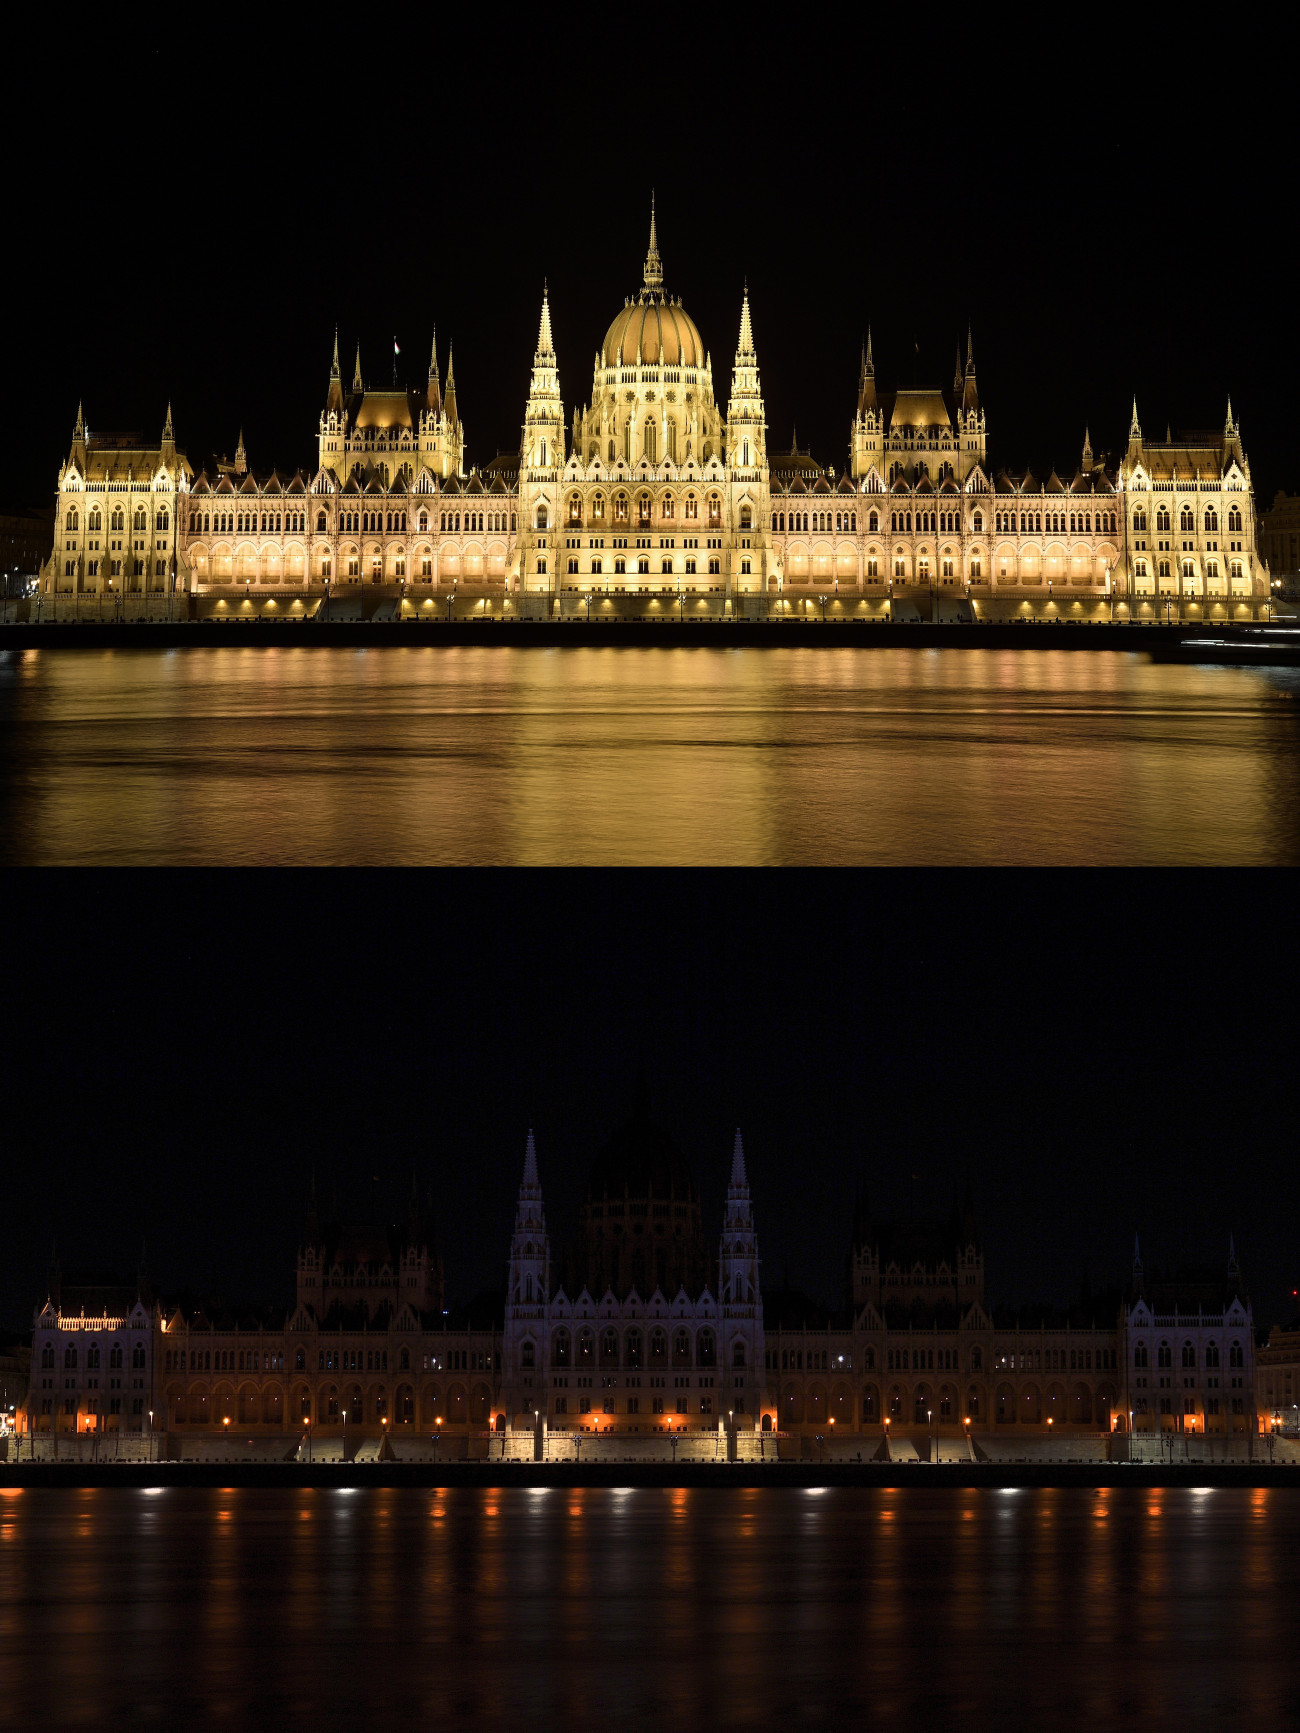 Budapest, 2023. március 25.
A Parlament épülete díszkivilágításban (fent) és anélkül (lent) a Föld órája elnevezésű akcióban 2023. március 25-én. A Föld óráját szervező Természetvédelmi Világalap (WWF) minden év márciusának utolsó szombatján, az óraátállítás előtti estén arra kéri a mozgalom támogatóit, hogy egy órára kapcsolják le a felesleges lámpákat és elektromos berendezéseket. A szimbolikus lekapcsolás célja, hogy ráirányítsa a figyelmet az éghajlatváltozásra, valamint a természeti értékek megőrzésének fontosságára és a fenntartható életmódra.
MTI/Lakatos Péter